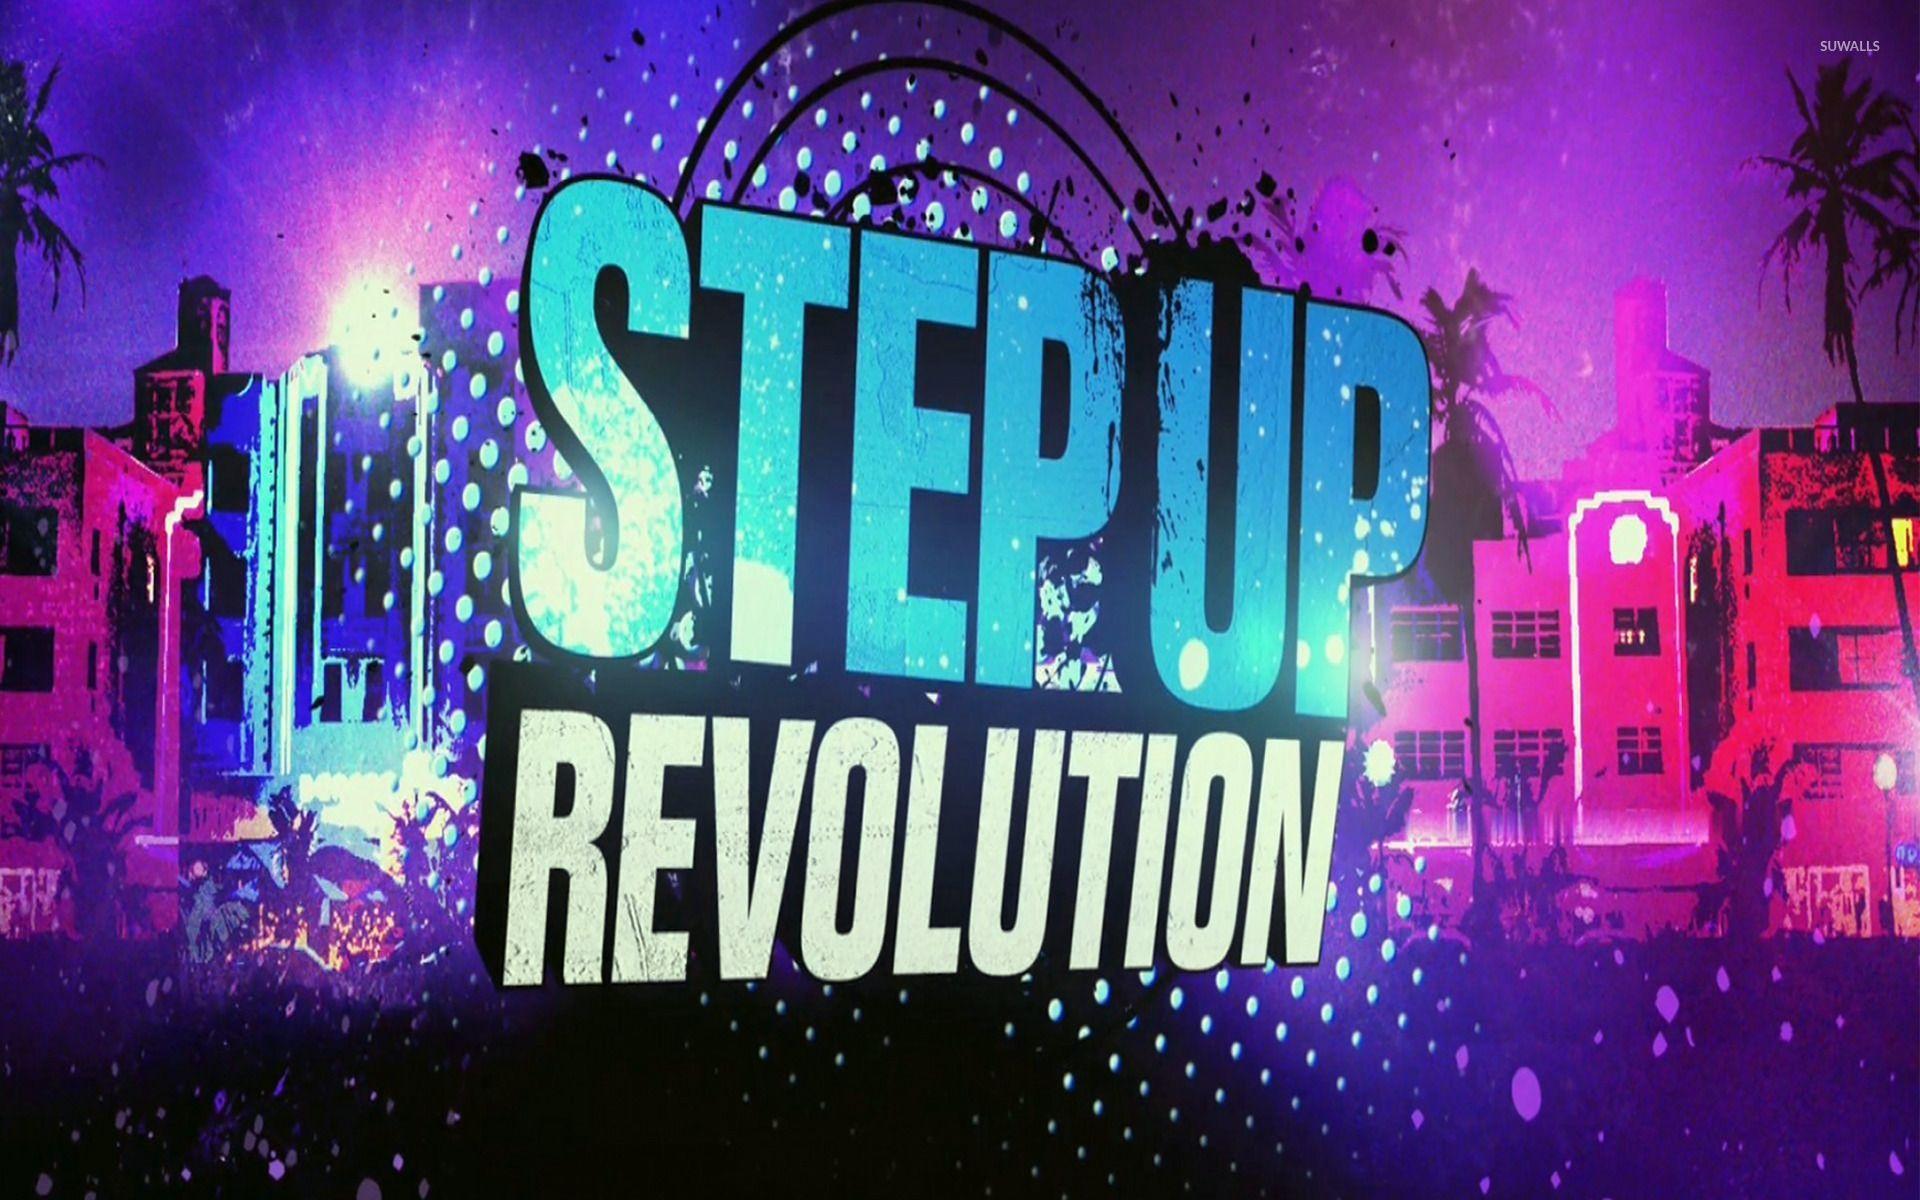 Step Up Revolution Wallpaper